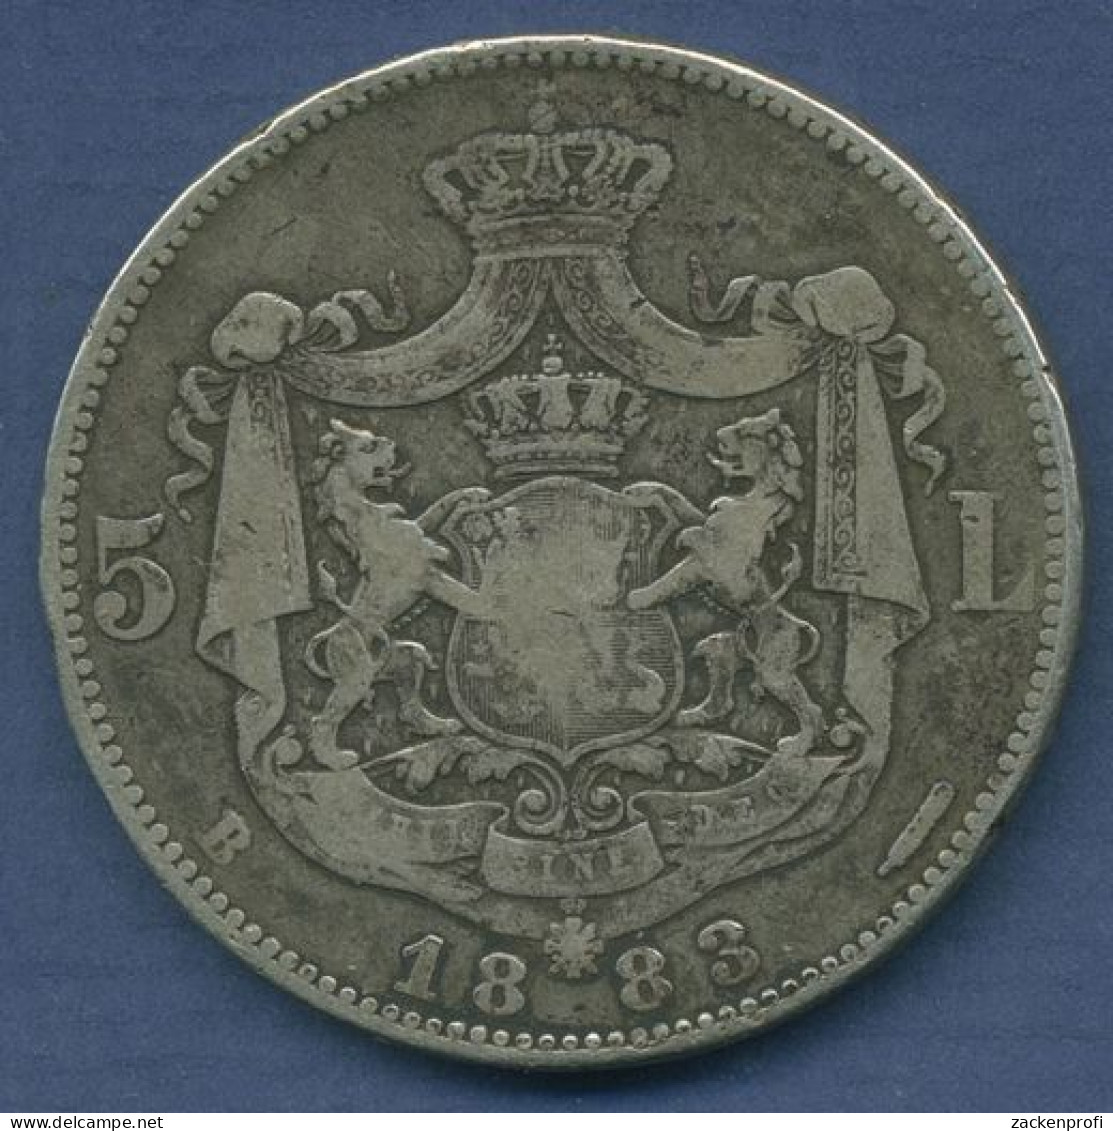 Rumänien 5 Lei 1883 B, Carol I., KM 17.1 Schön - Sehr Schön (m3937) - Rumänien